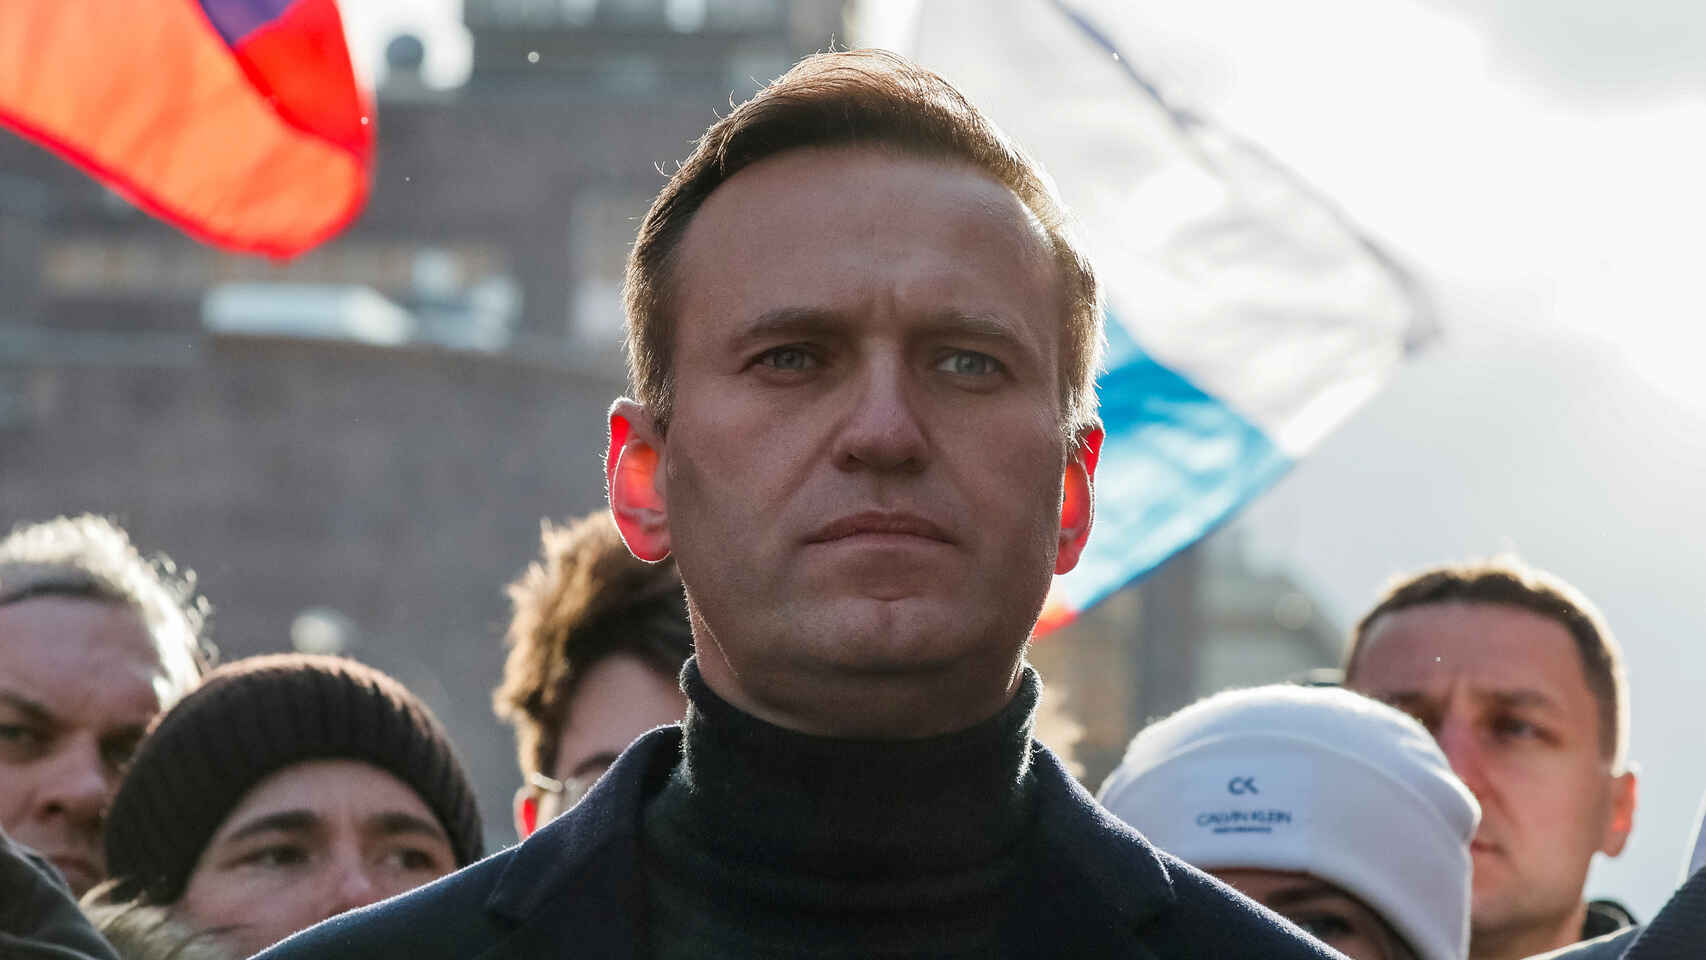 Berlín: dos laboratorios confirman envenenamiento de Navalny